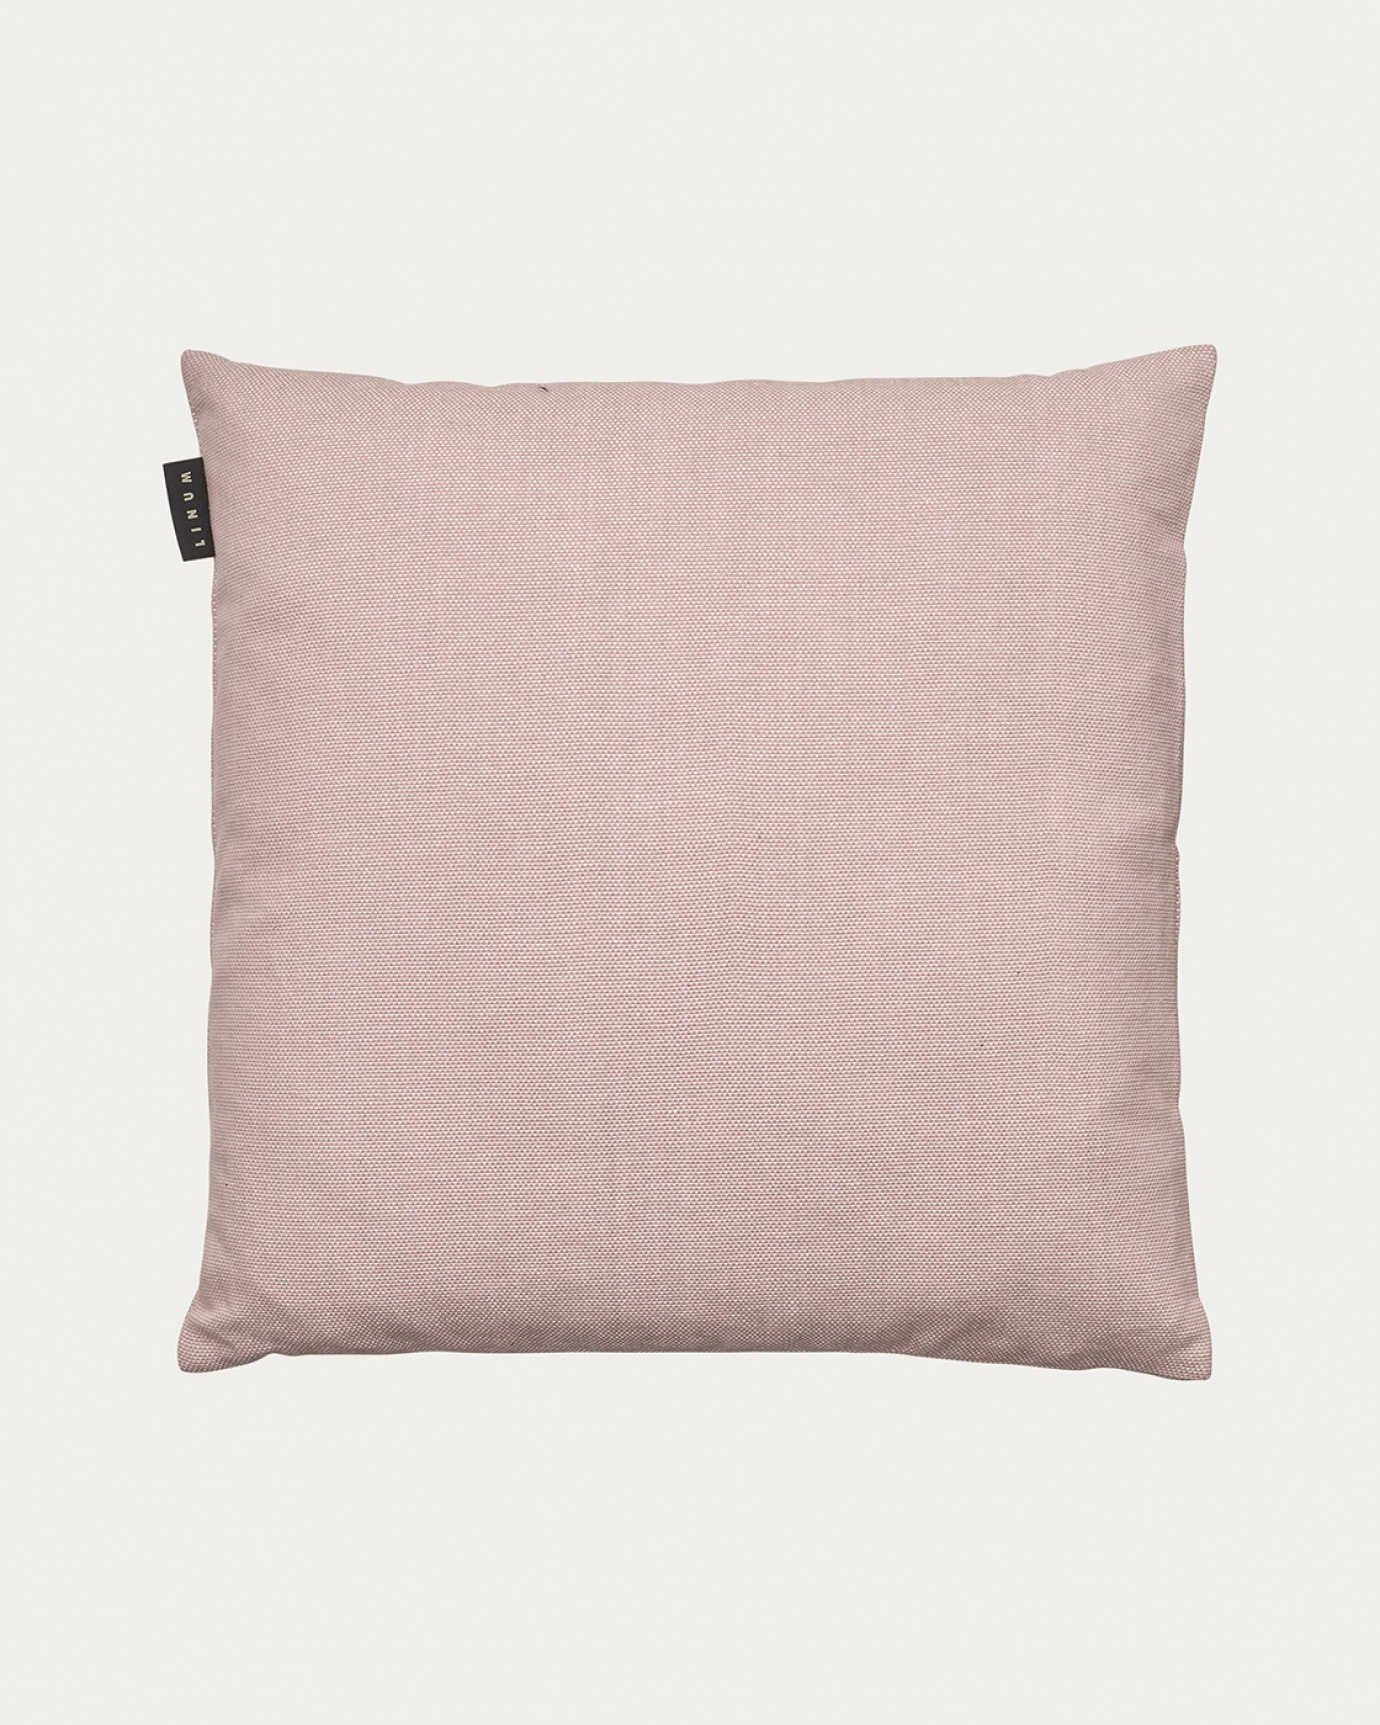 Produktbild dammig rosa PEPPER kuddfodral av mjuk bomull från LINUM DESIGN. Lätt att tvätta och hållbar genom generationer. Storlek 50x50 cm.